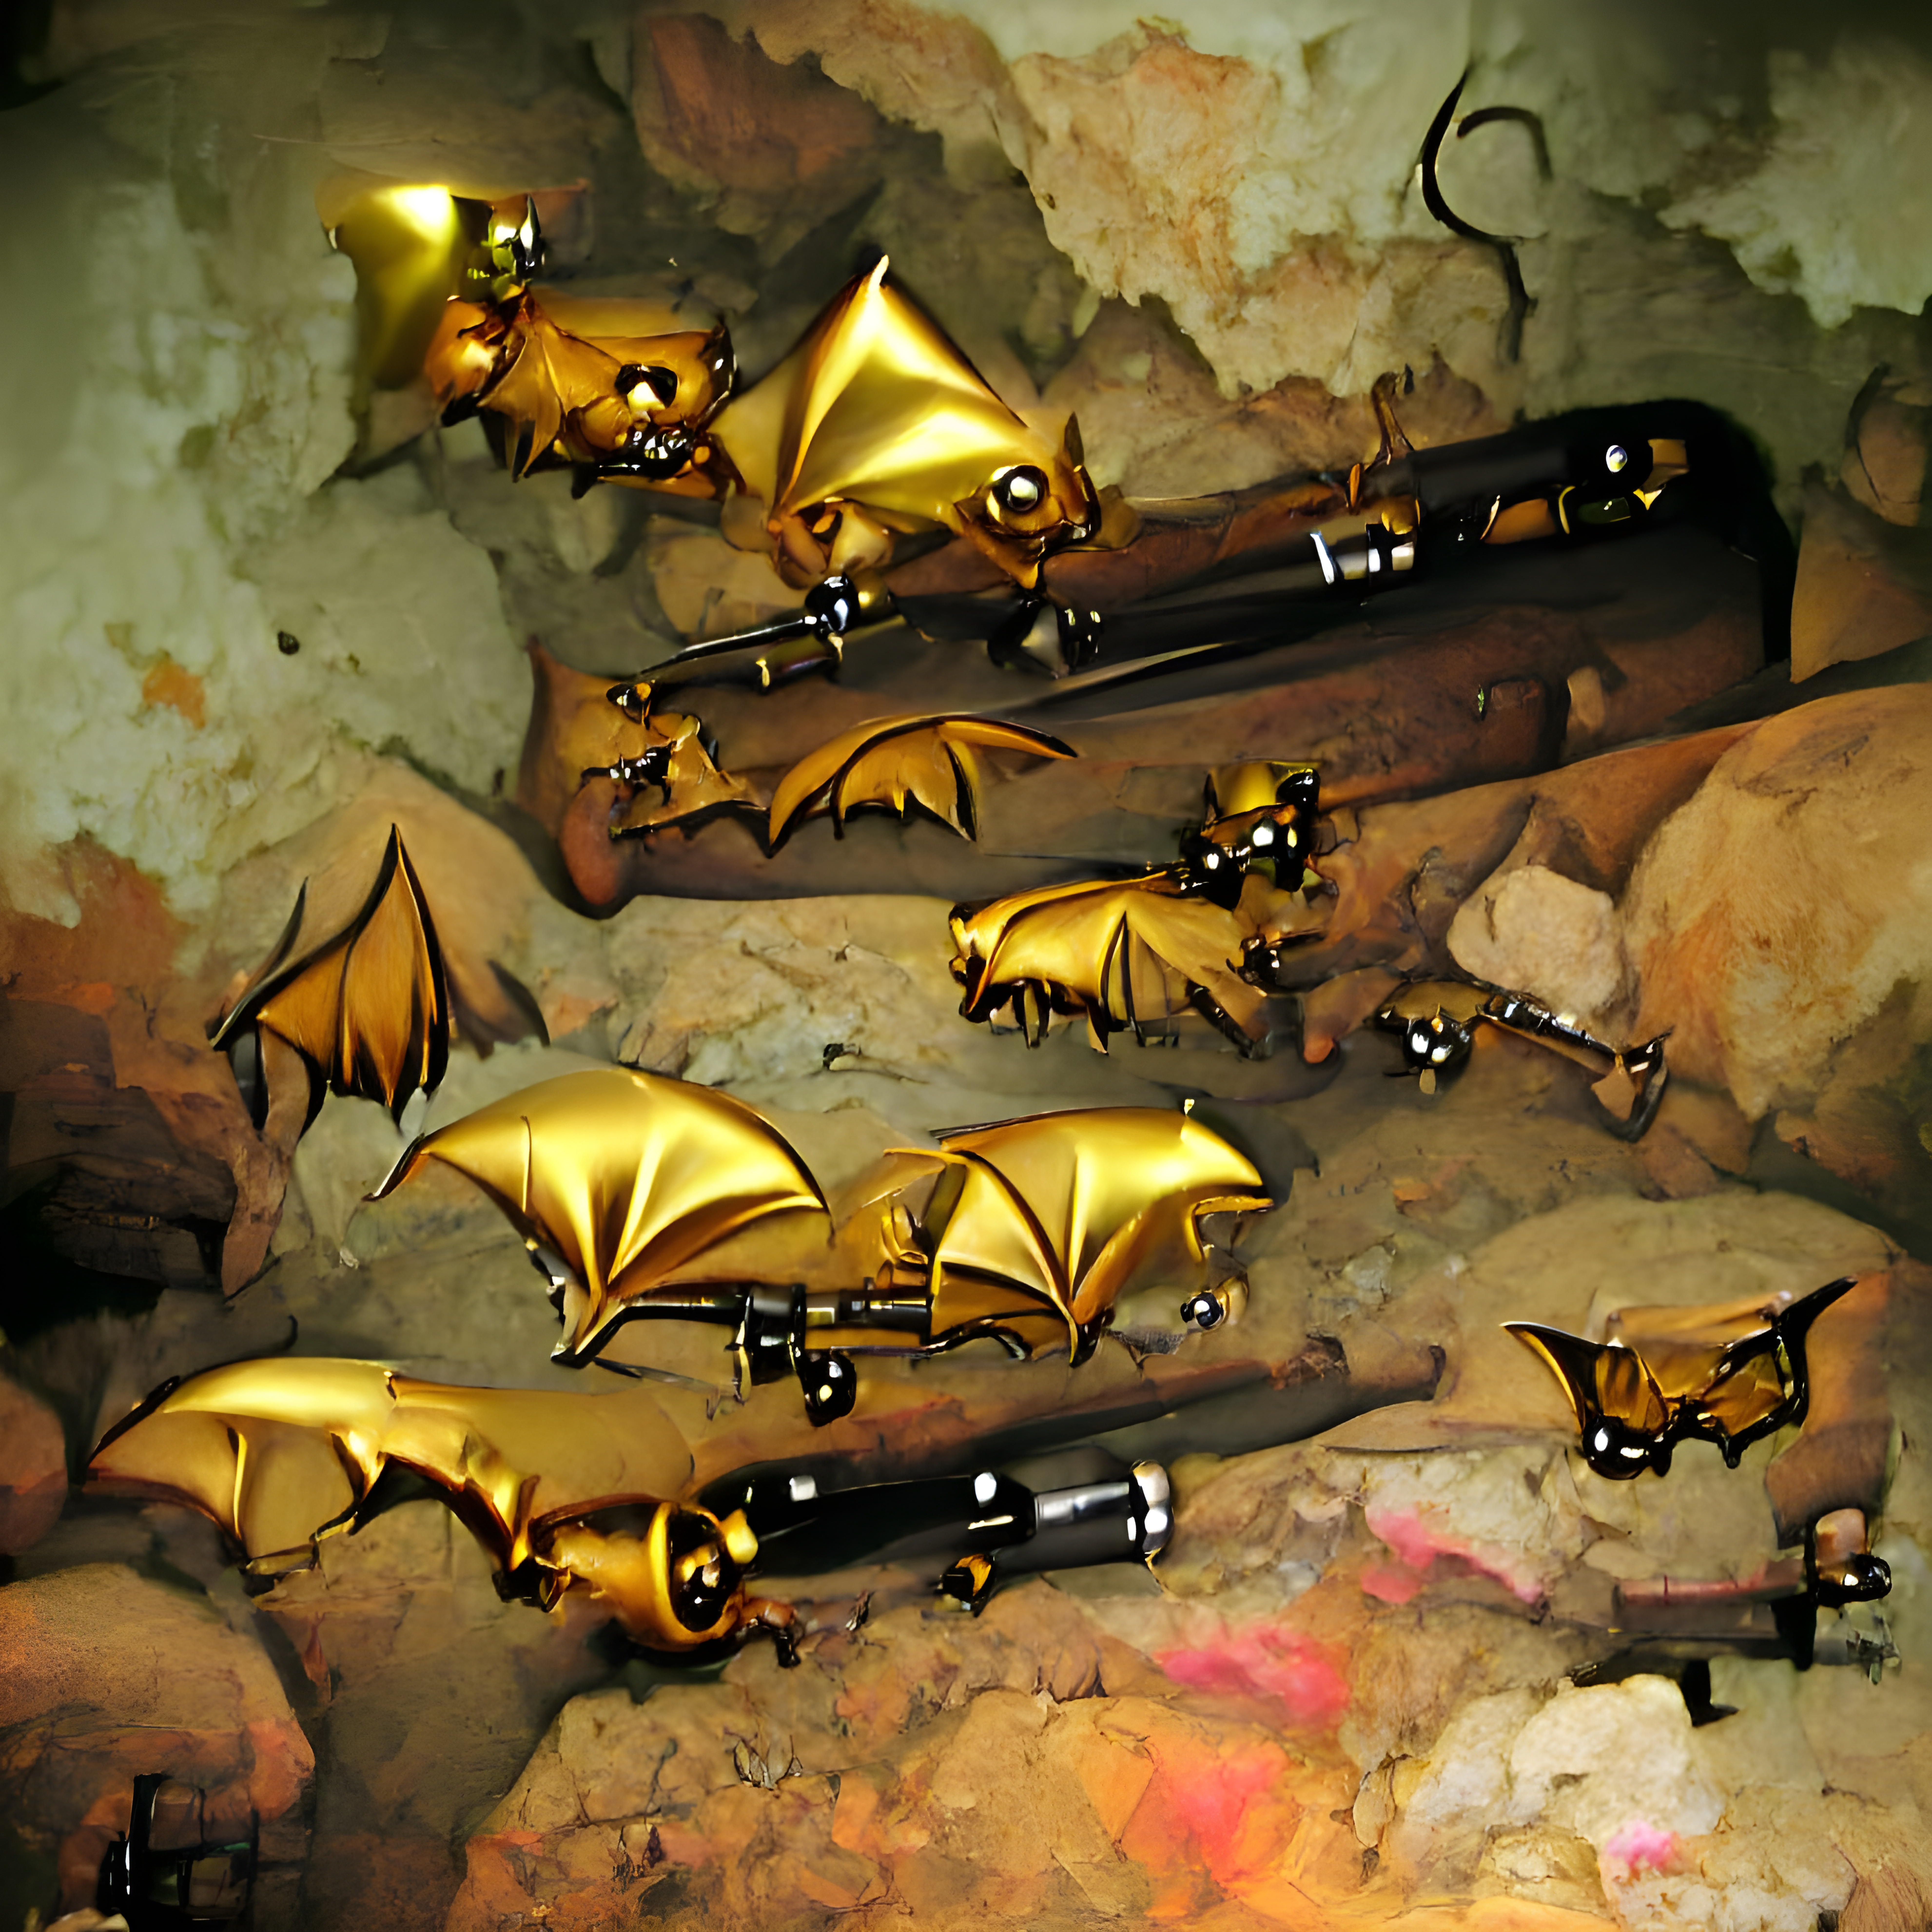 The Bat Crew